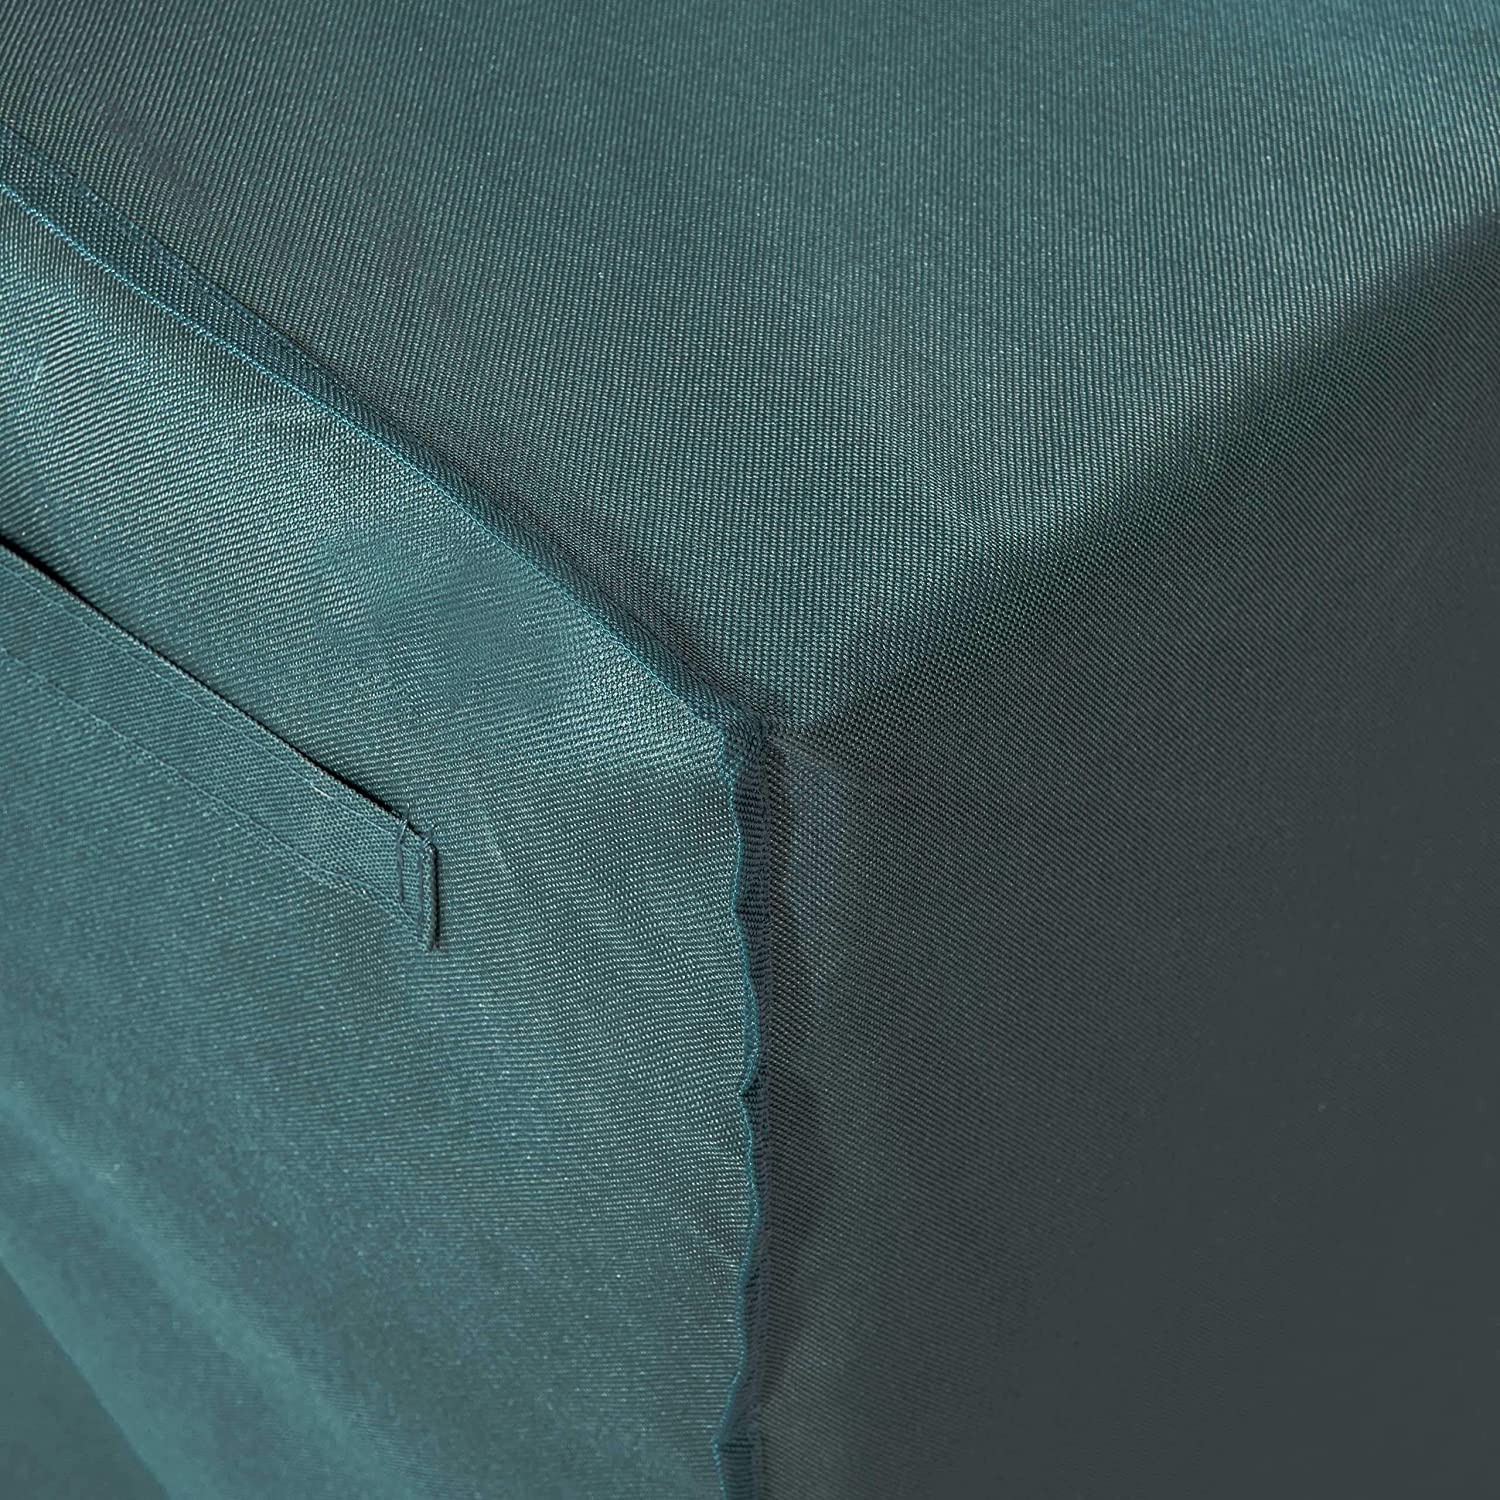 Abdeckplane für Gartenstühle - 64 x 79 x 102 cm - Grün/Grau